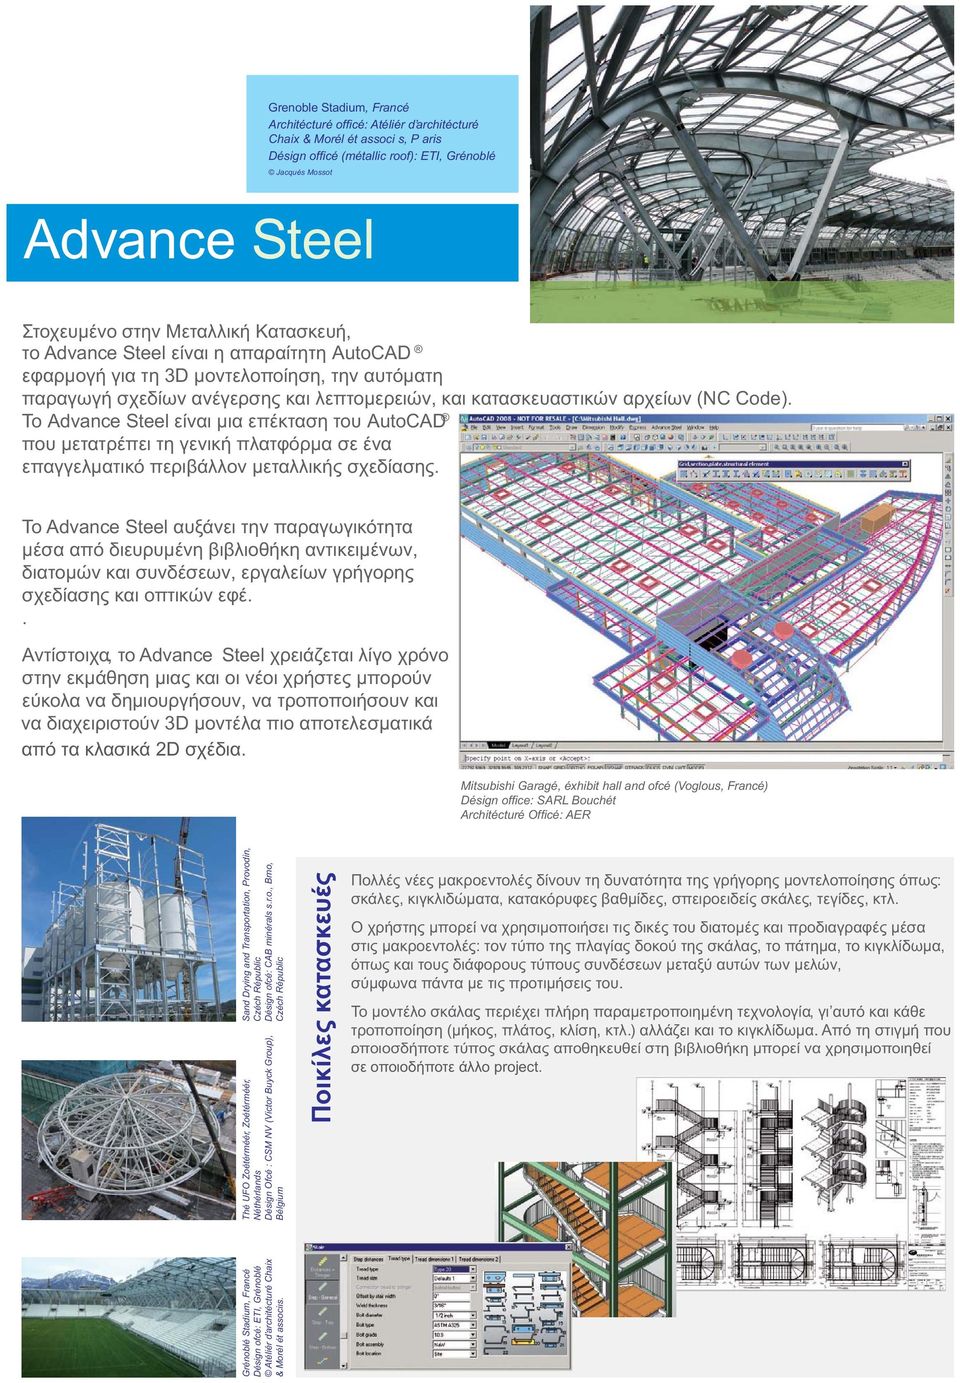 To Advance Steel είναι μια επέκταση του AutoCAD που μετατρέπει τη γενική πλατφόρμα σε ένα επαγγελματικό περιβάλλον μεταλλικής σχεδίασης.